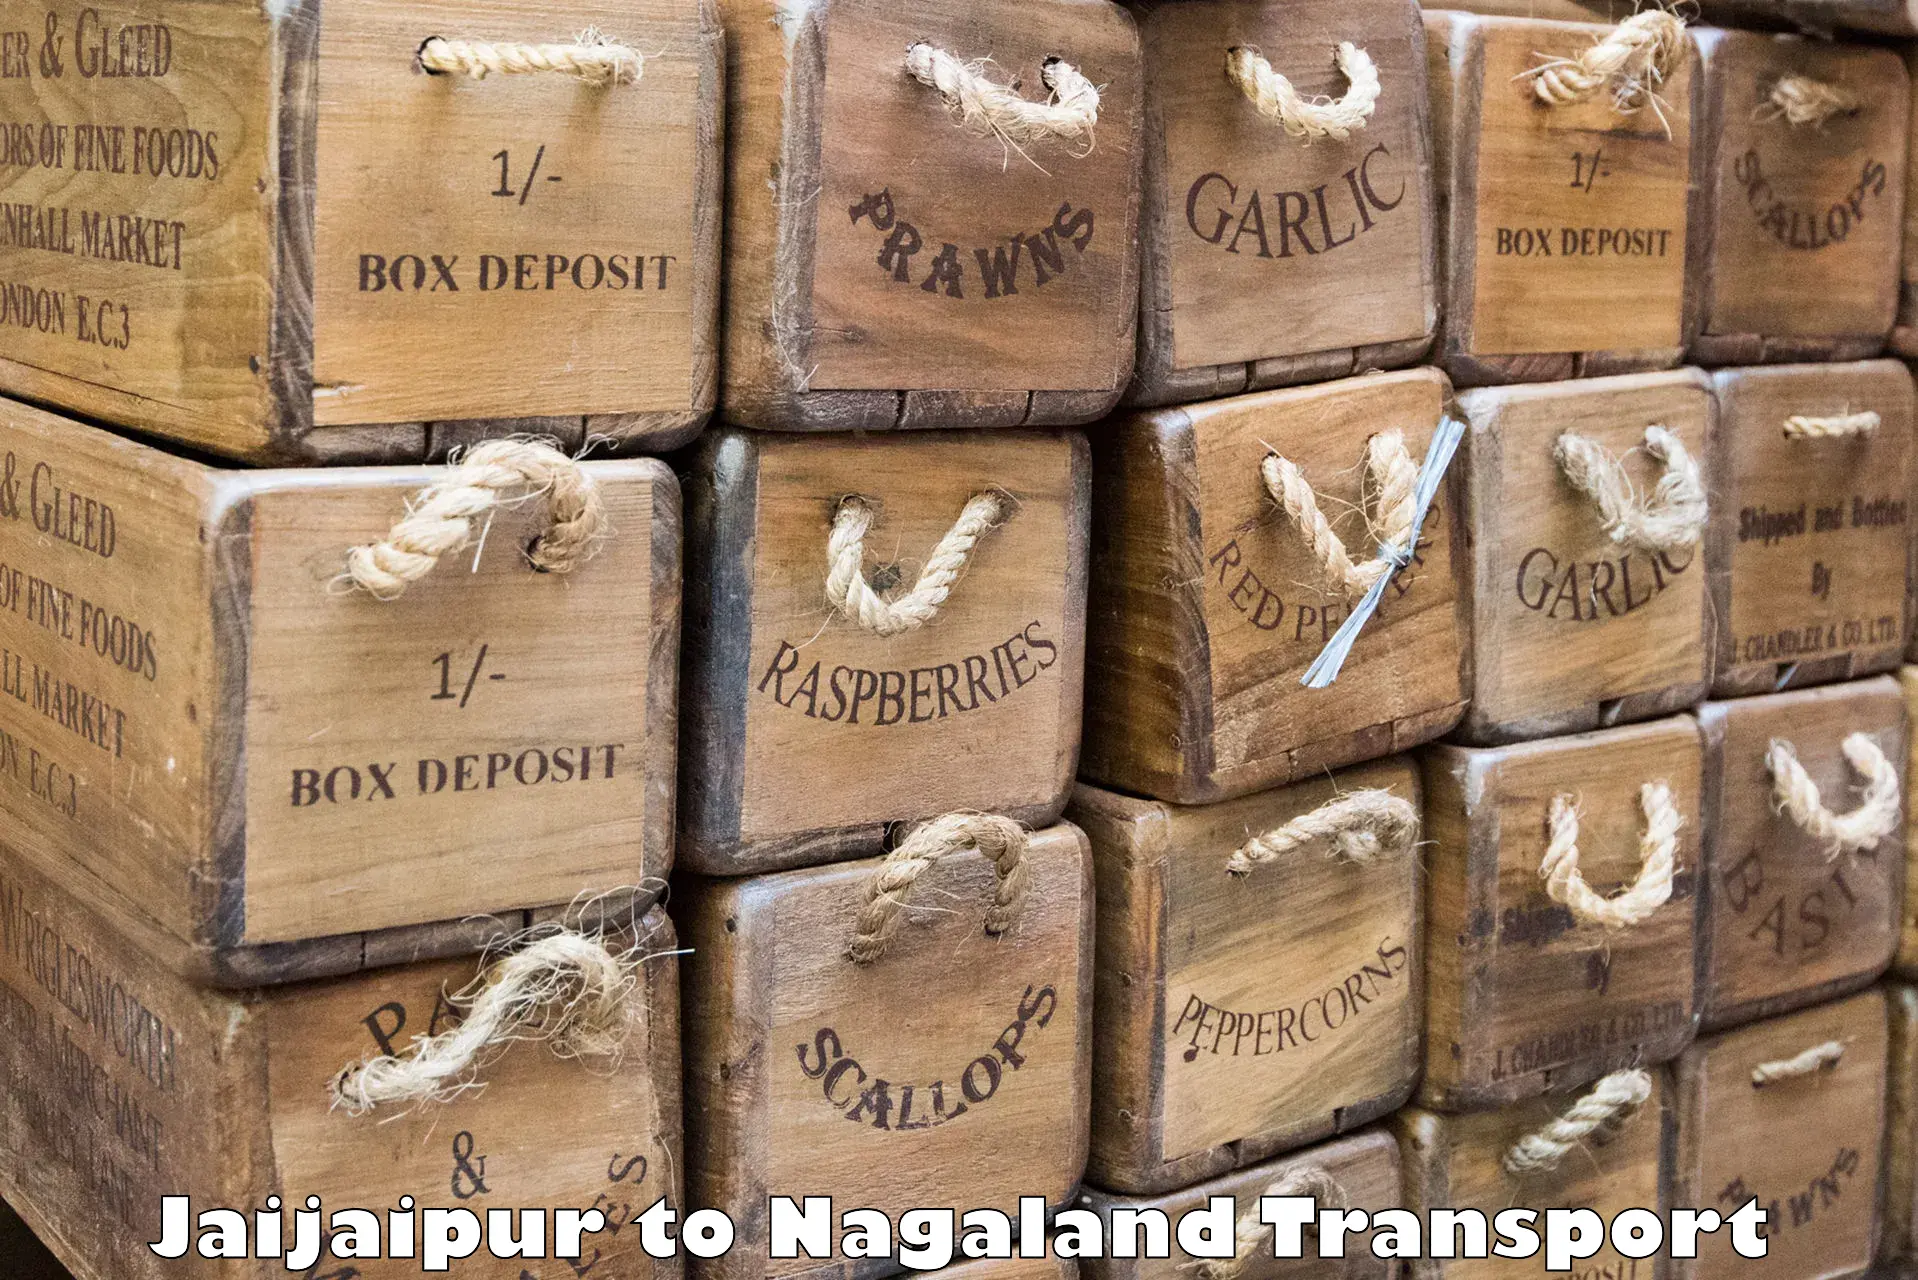 Express transport services Jaijaipur to Mon